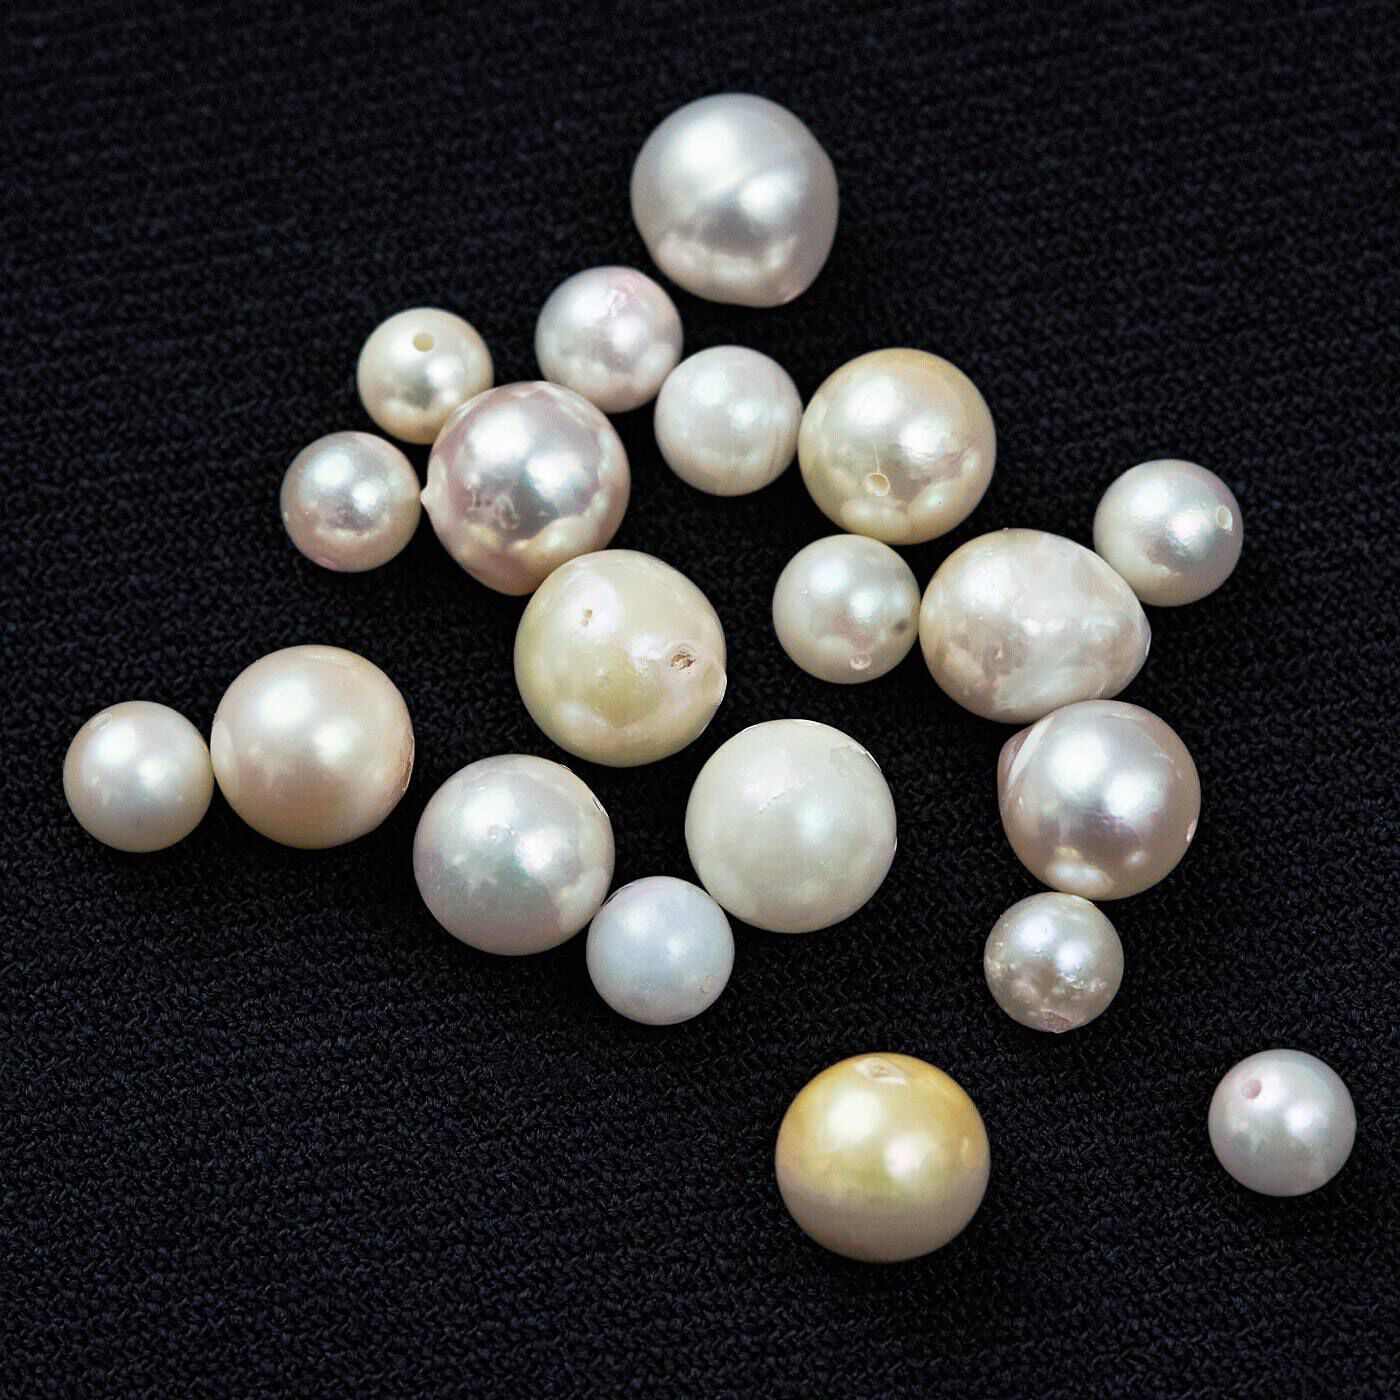 Real Stock|el:ment　工房に眠っていたアコヤバロック真珠の　長さを調節できる22金メッキネックレス|ひと粒ごとに異なる色や形を、お楽しみください。